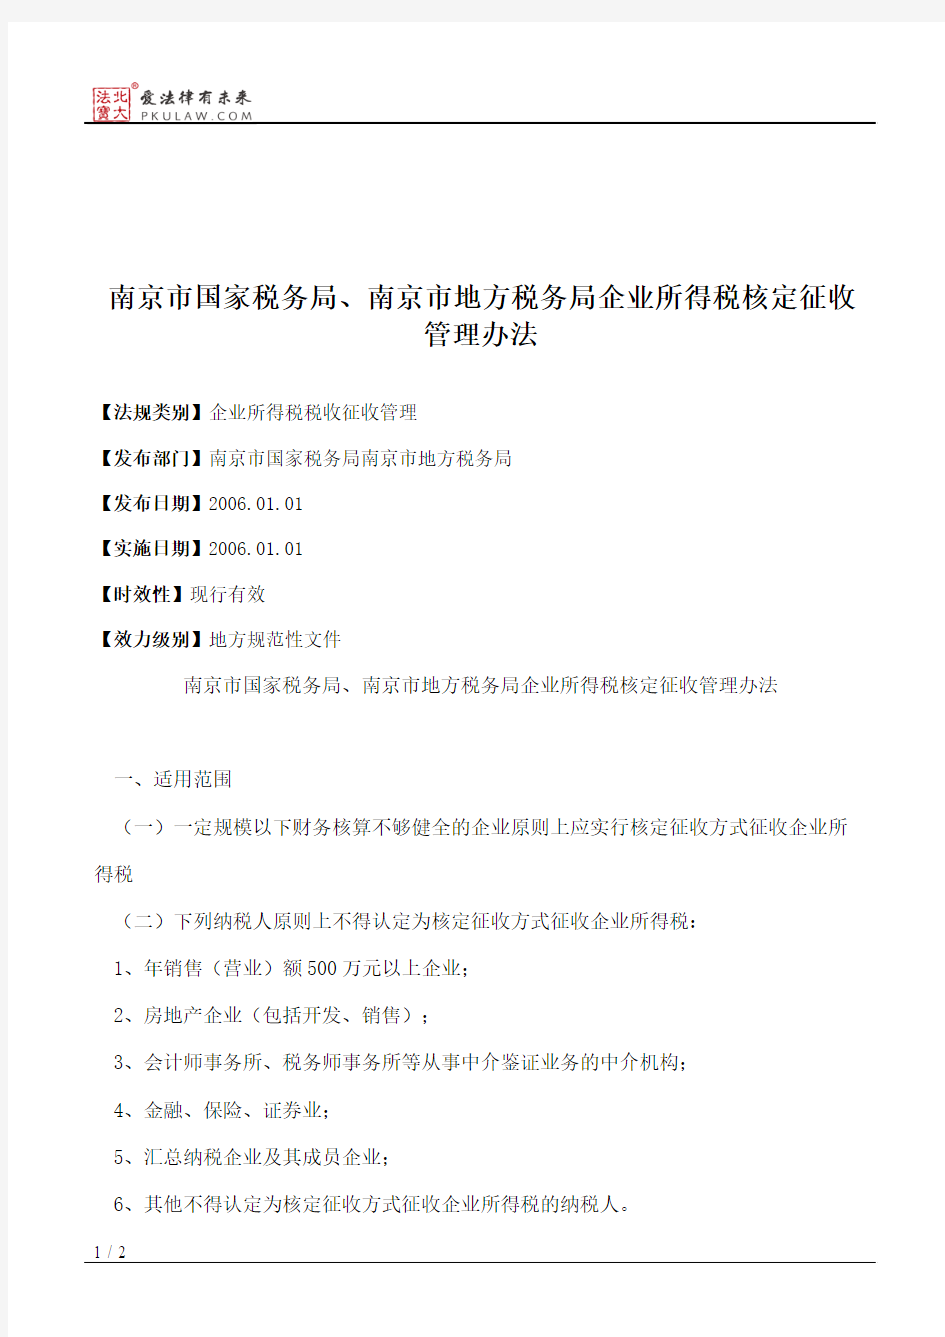 南京市国家税务局、南京市地方税务局企业所得税核定征收管理办法